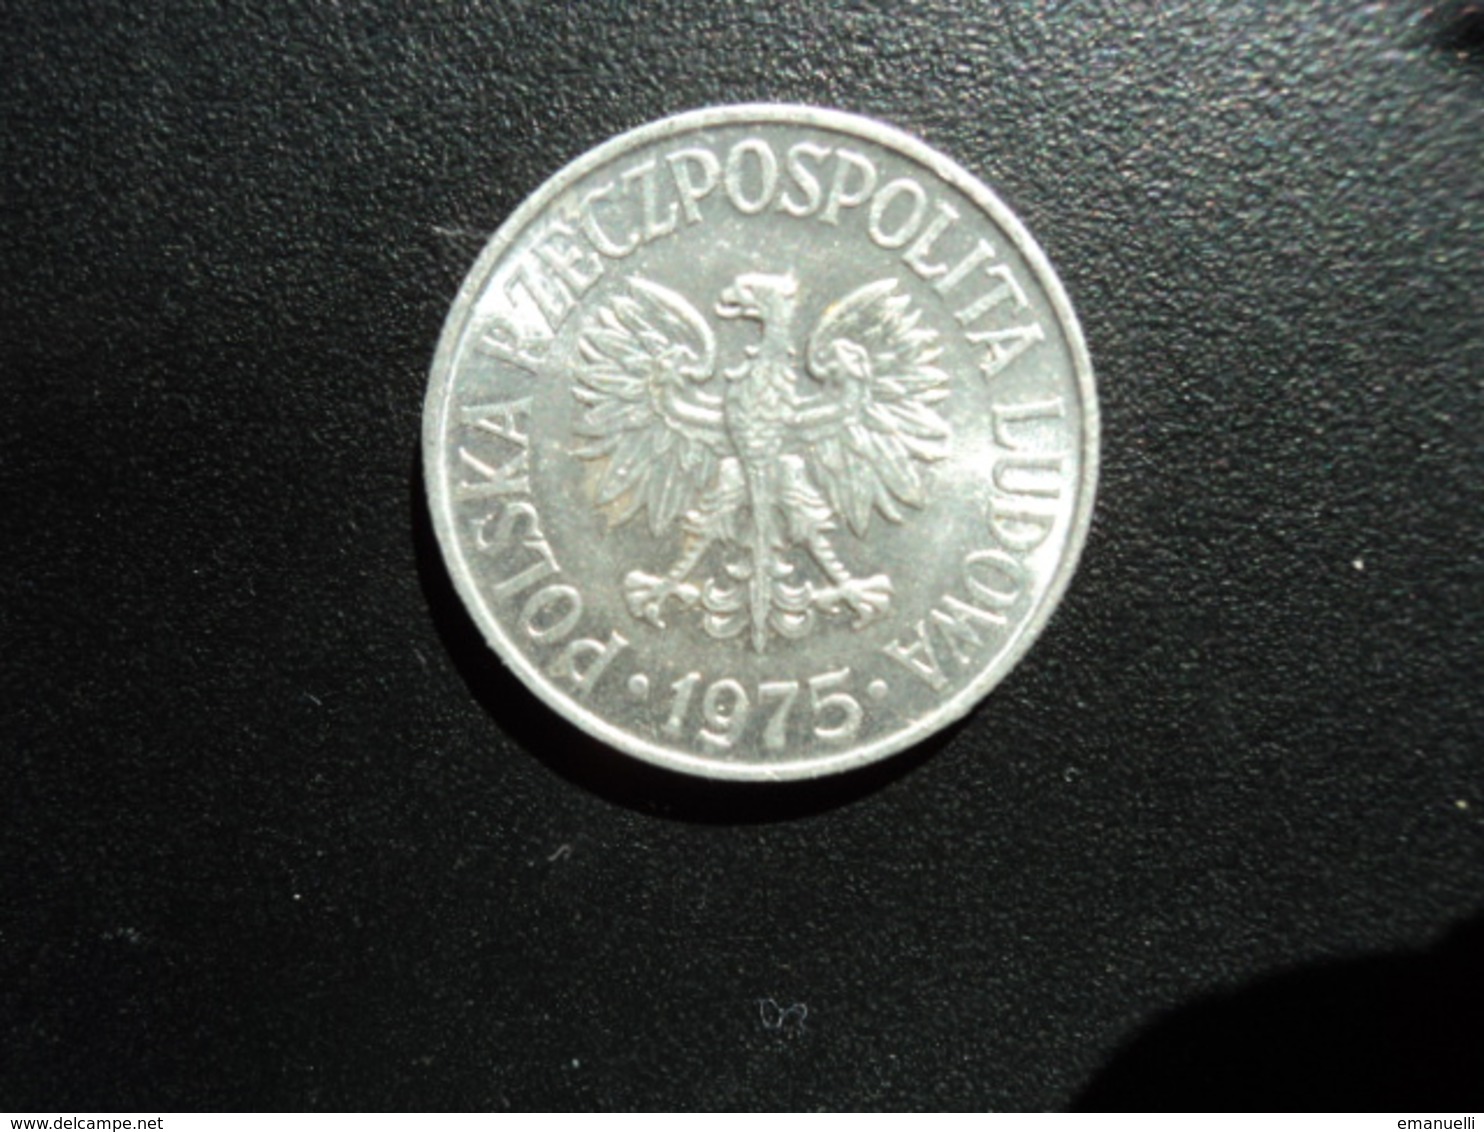 POLOGNE : 50 GROSZY   1975   Y 48.1       Non Circulé (UNC) - Poland